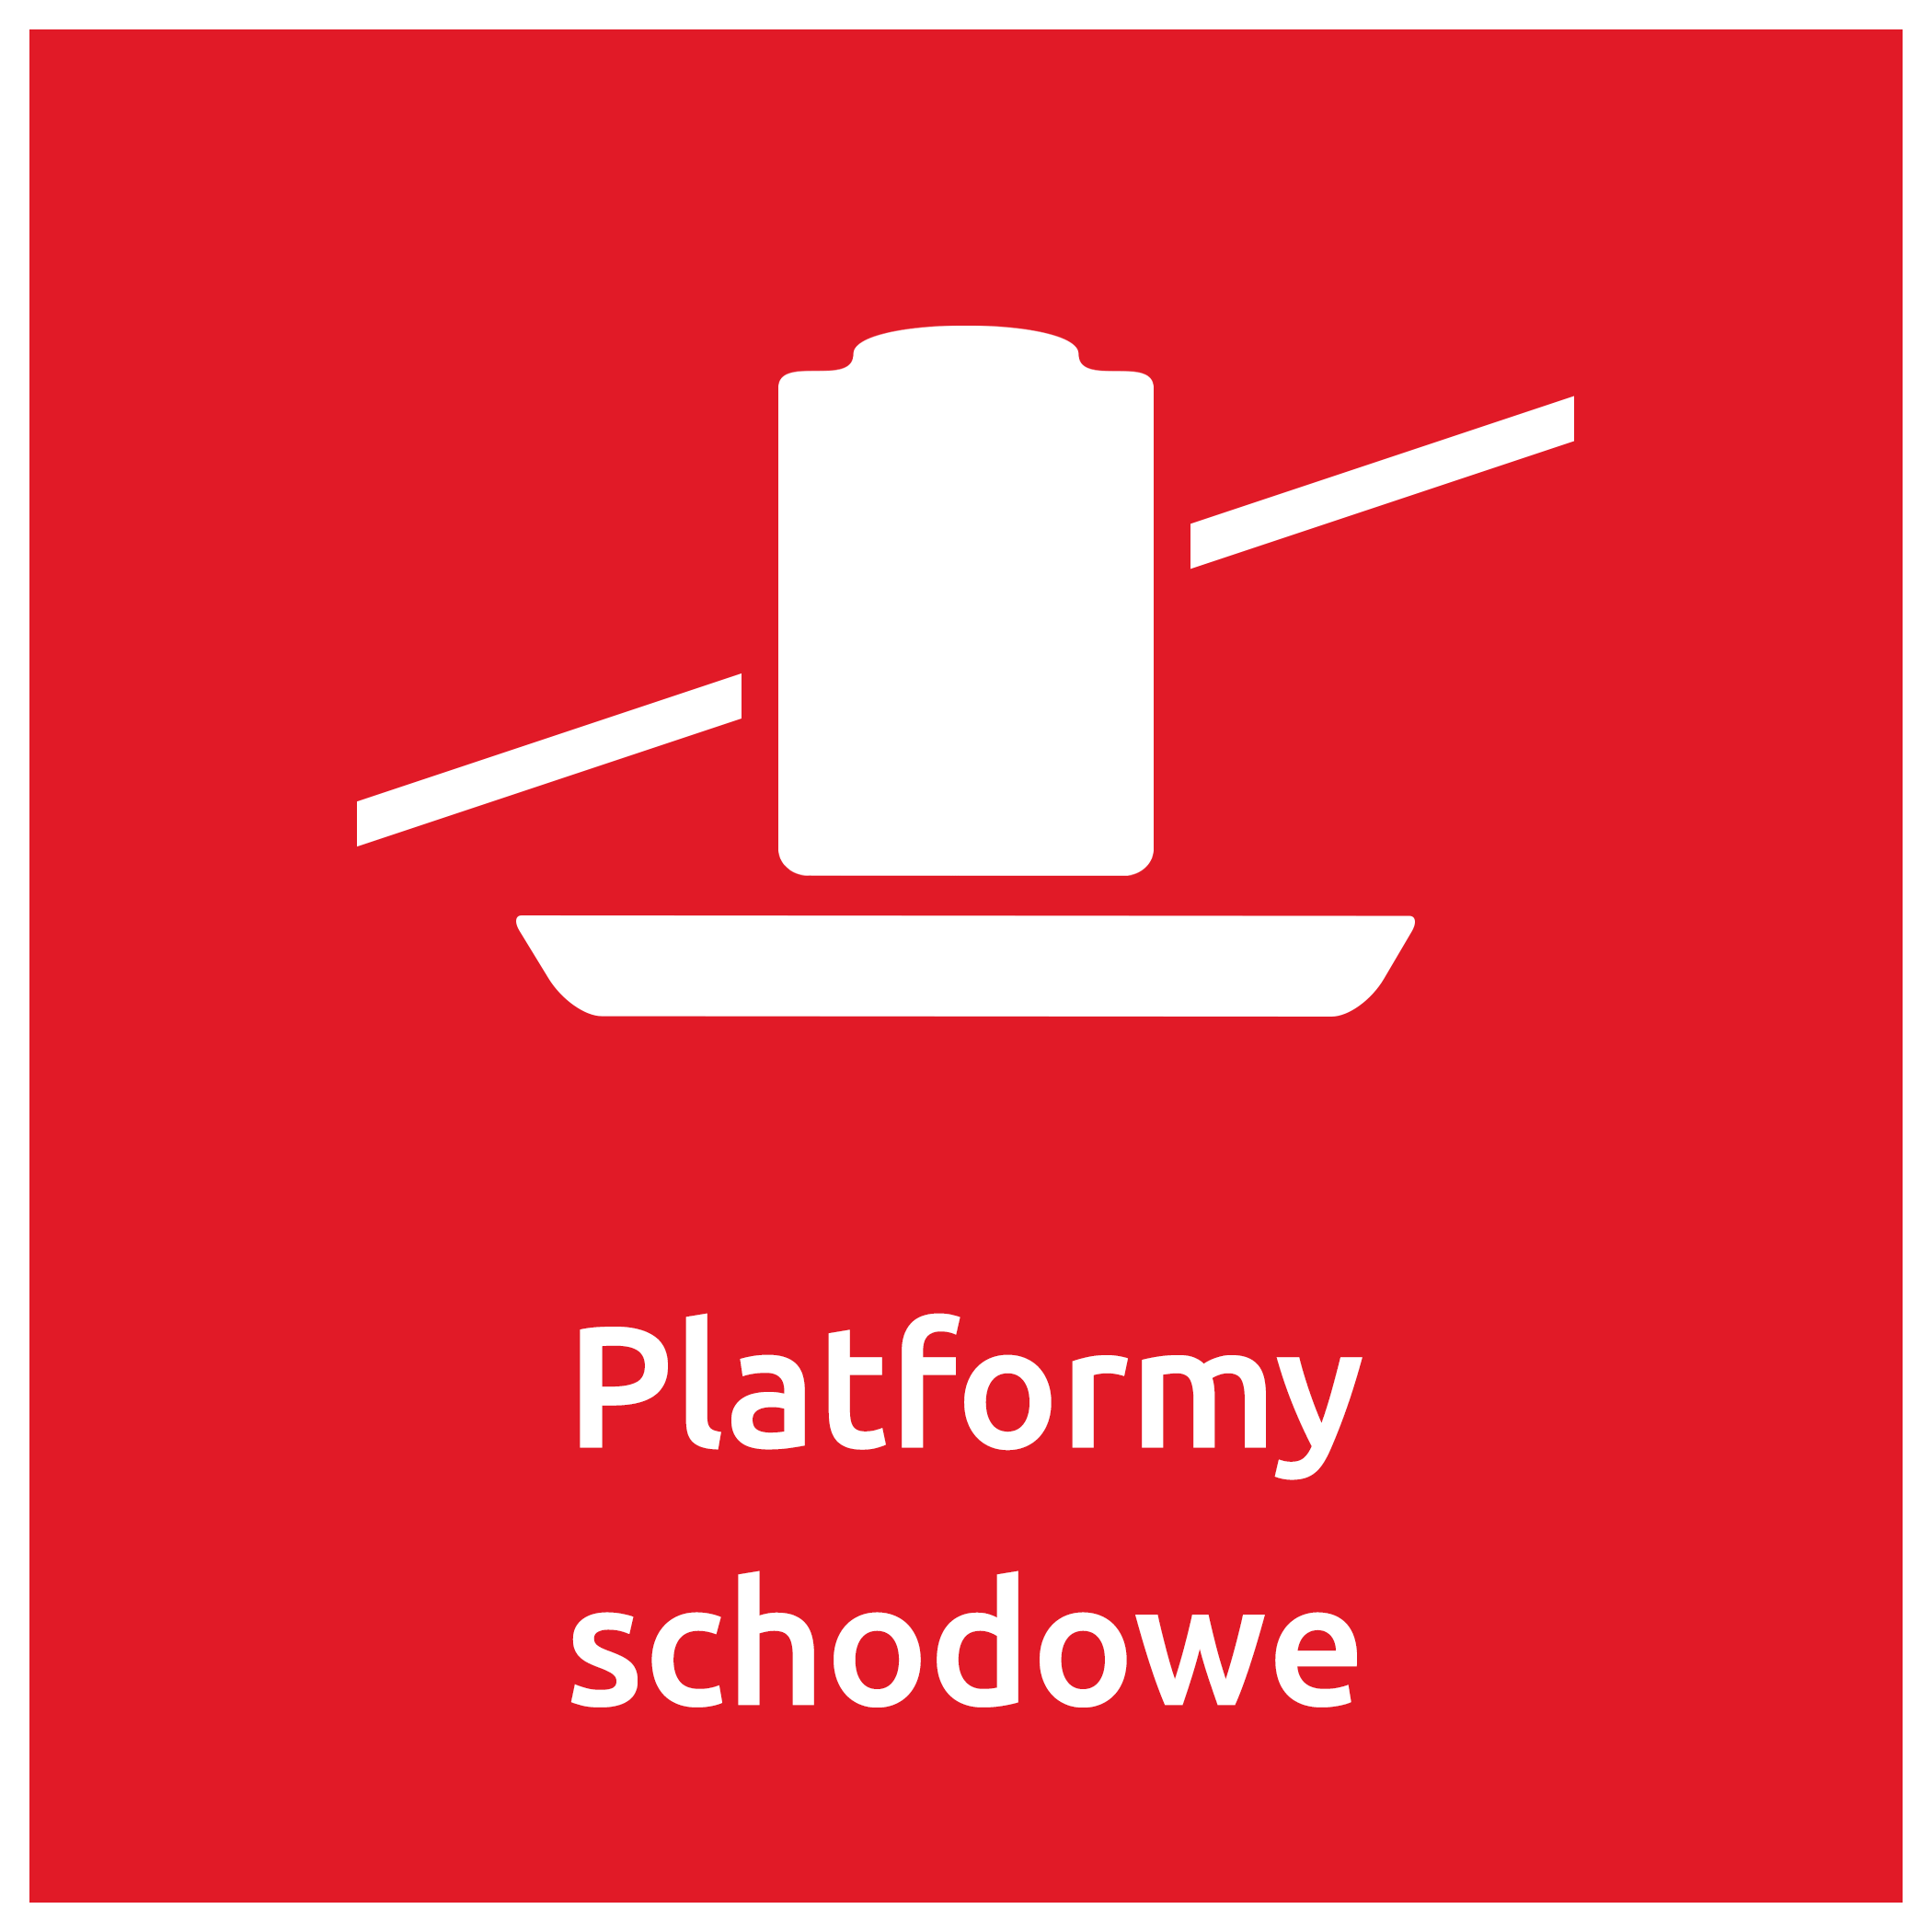 Platformy Schodowe Incline